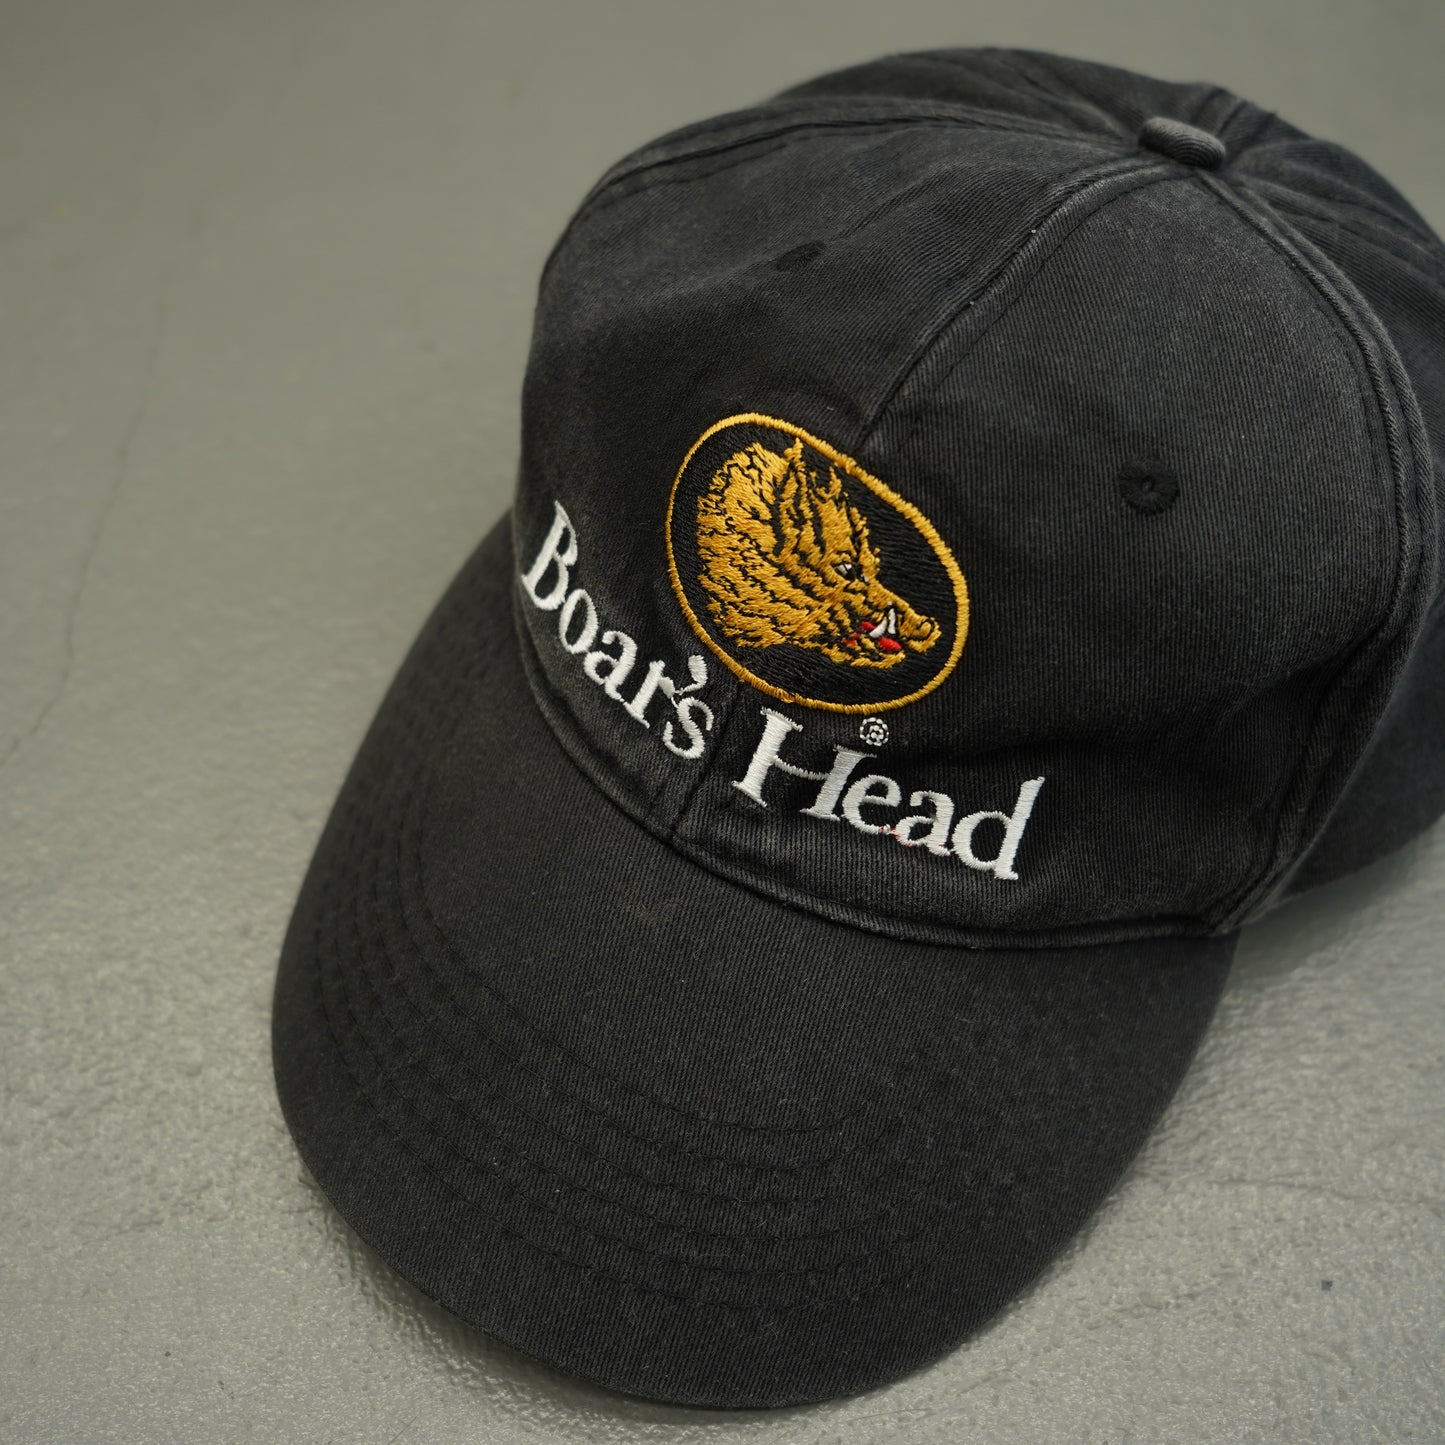 Boar's Head Cap